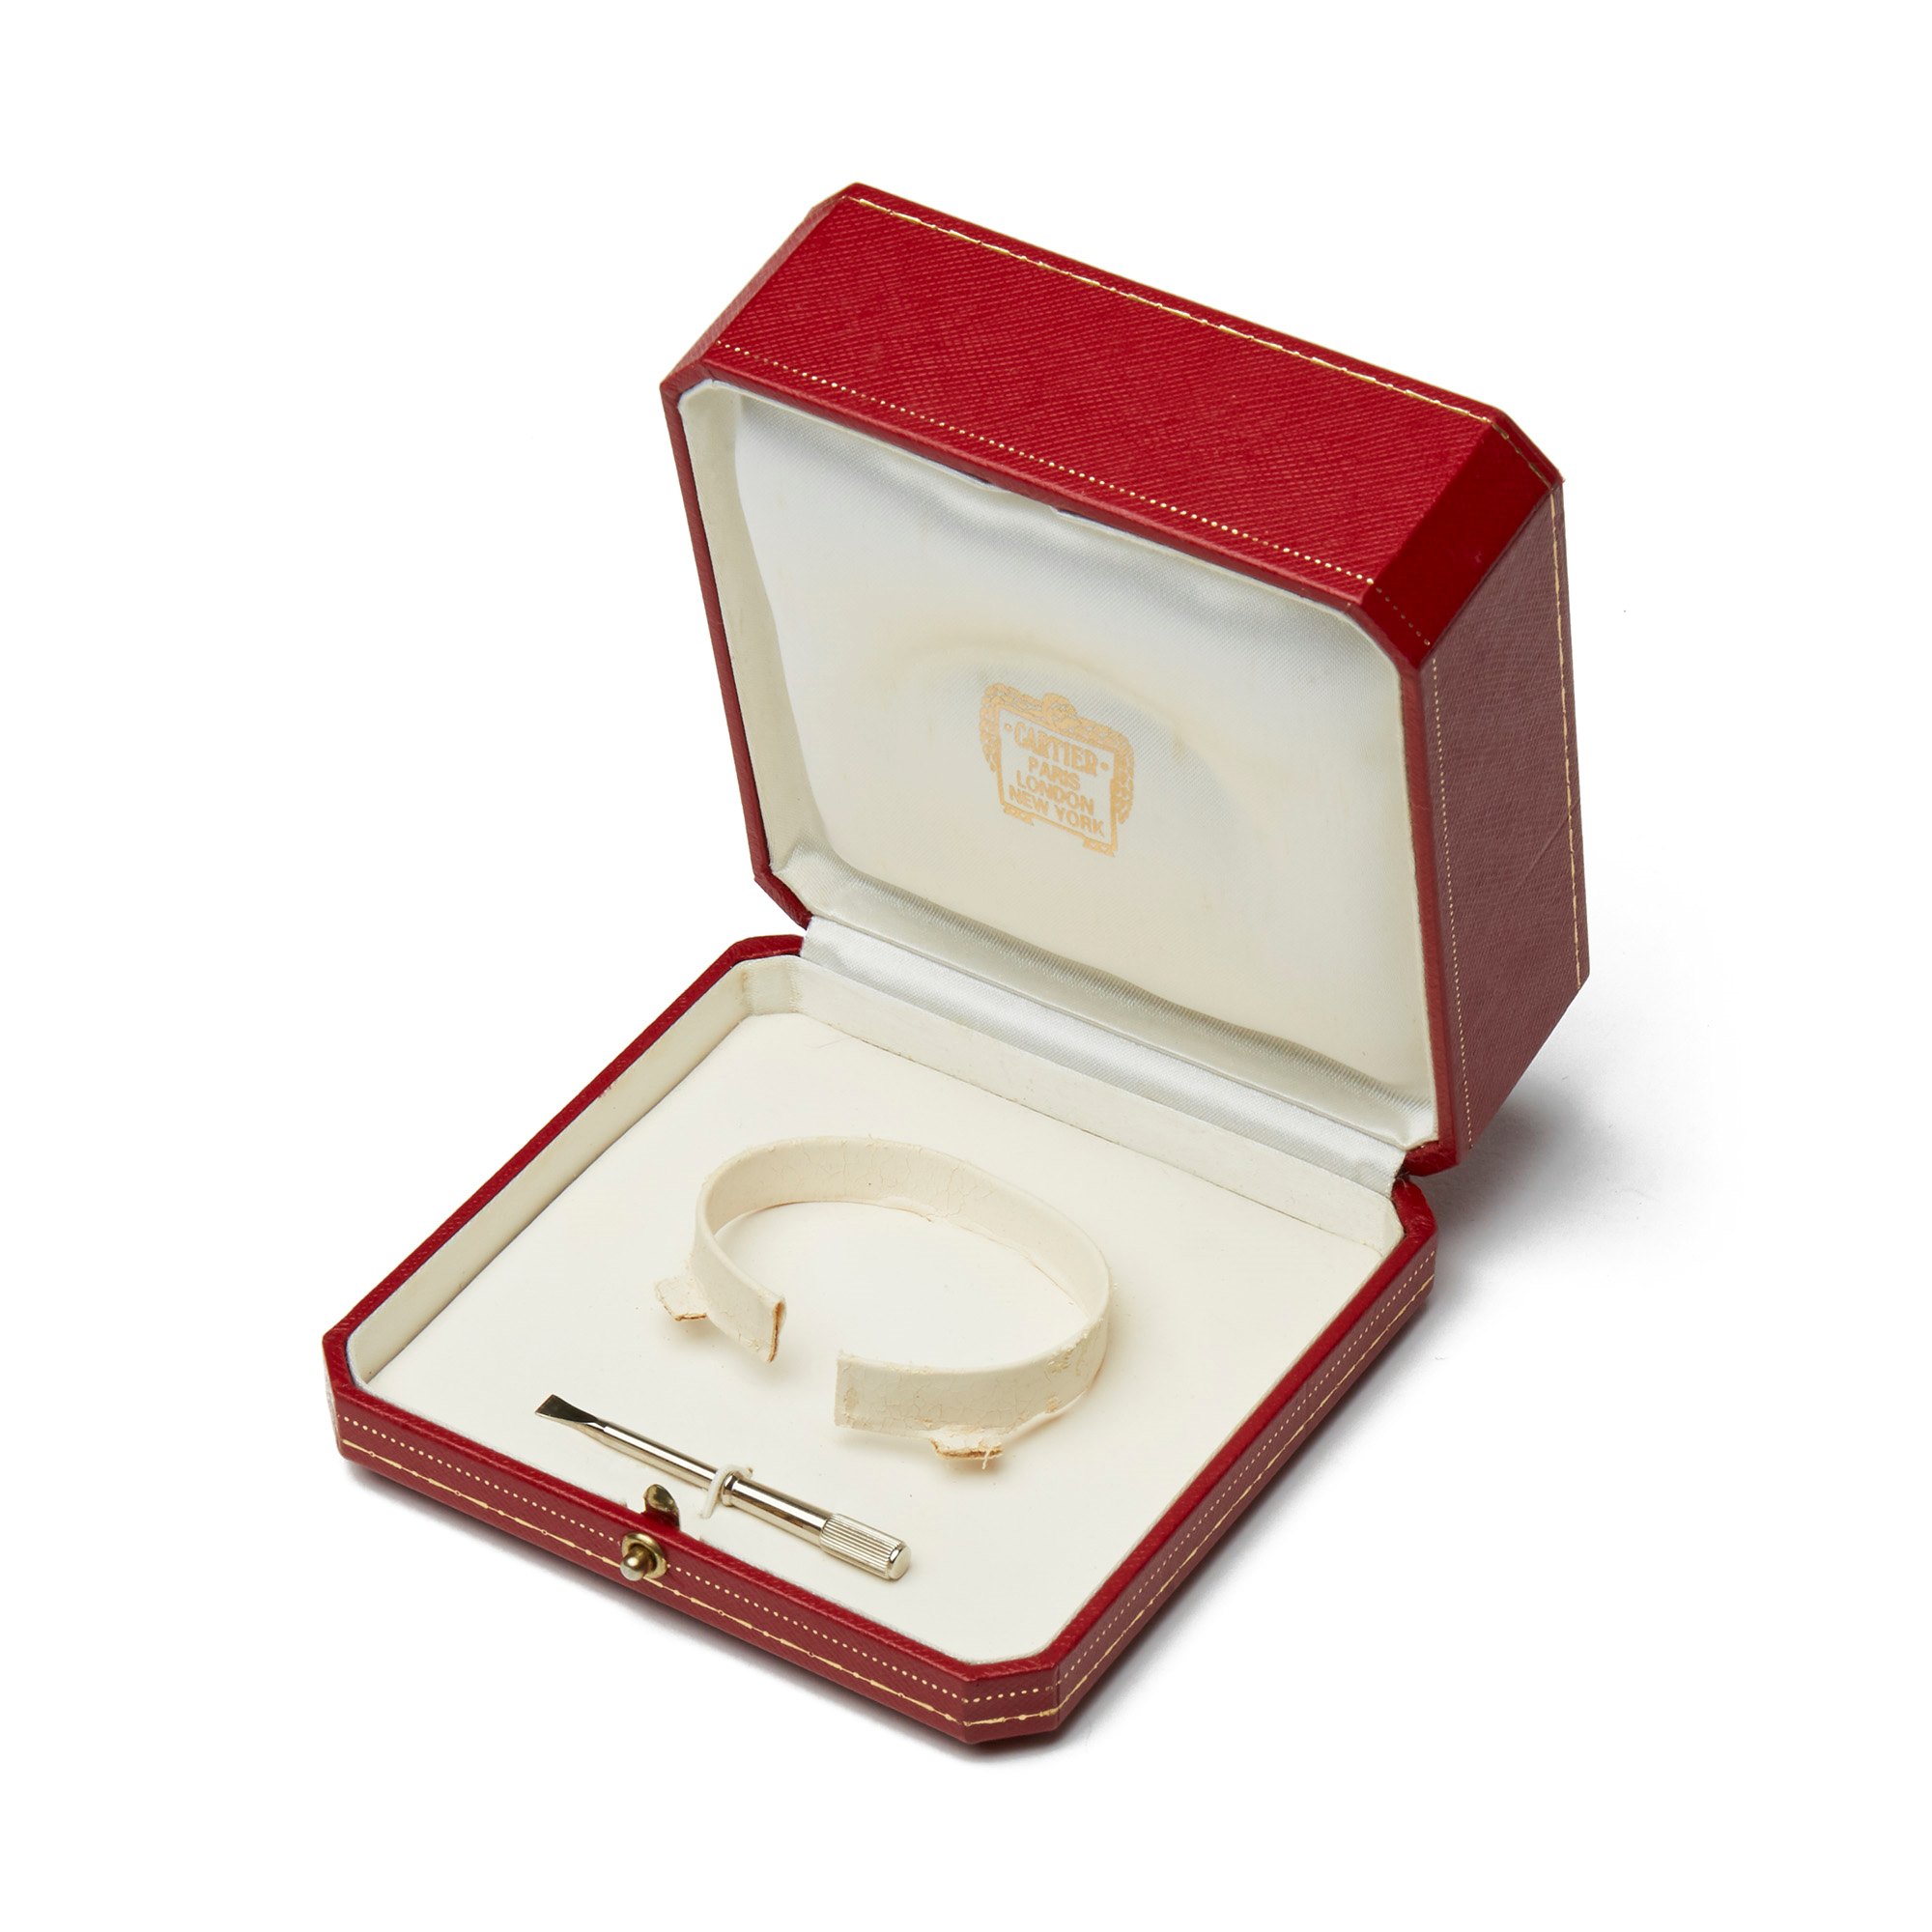 Cartier 18k White Gold Love Bracelet